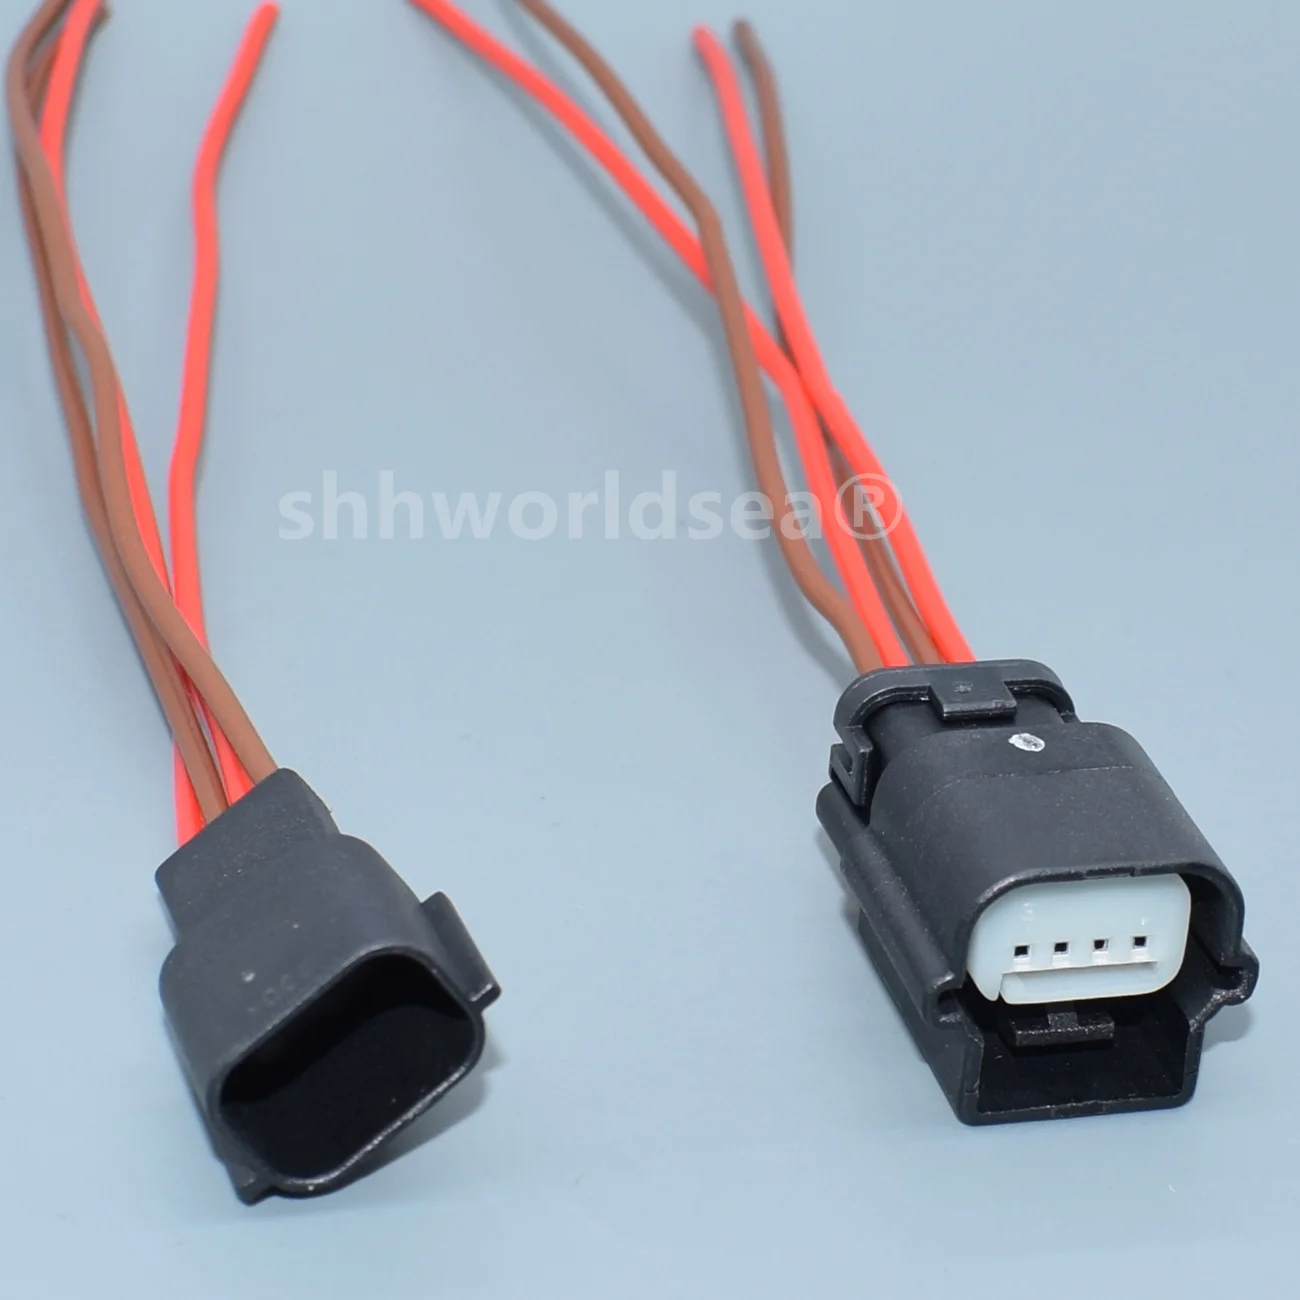 shhworldsea 4 tűs 0.6-os sorozatú autó passzív kulcs nélküli belépő antenna érzékelő huzal csatlakozó kábel lezáratlan aljzat - 3